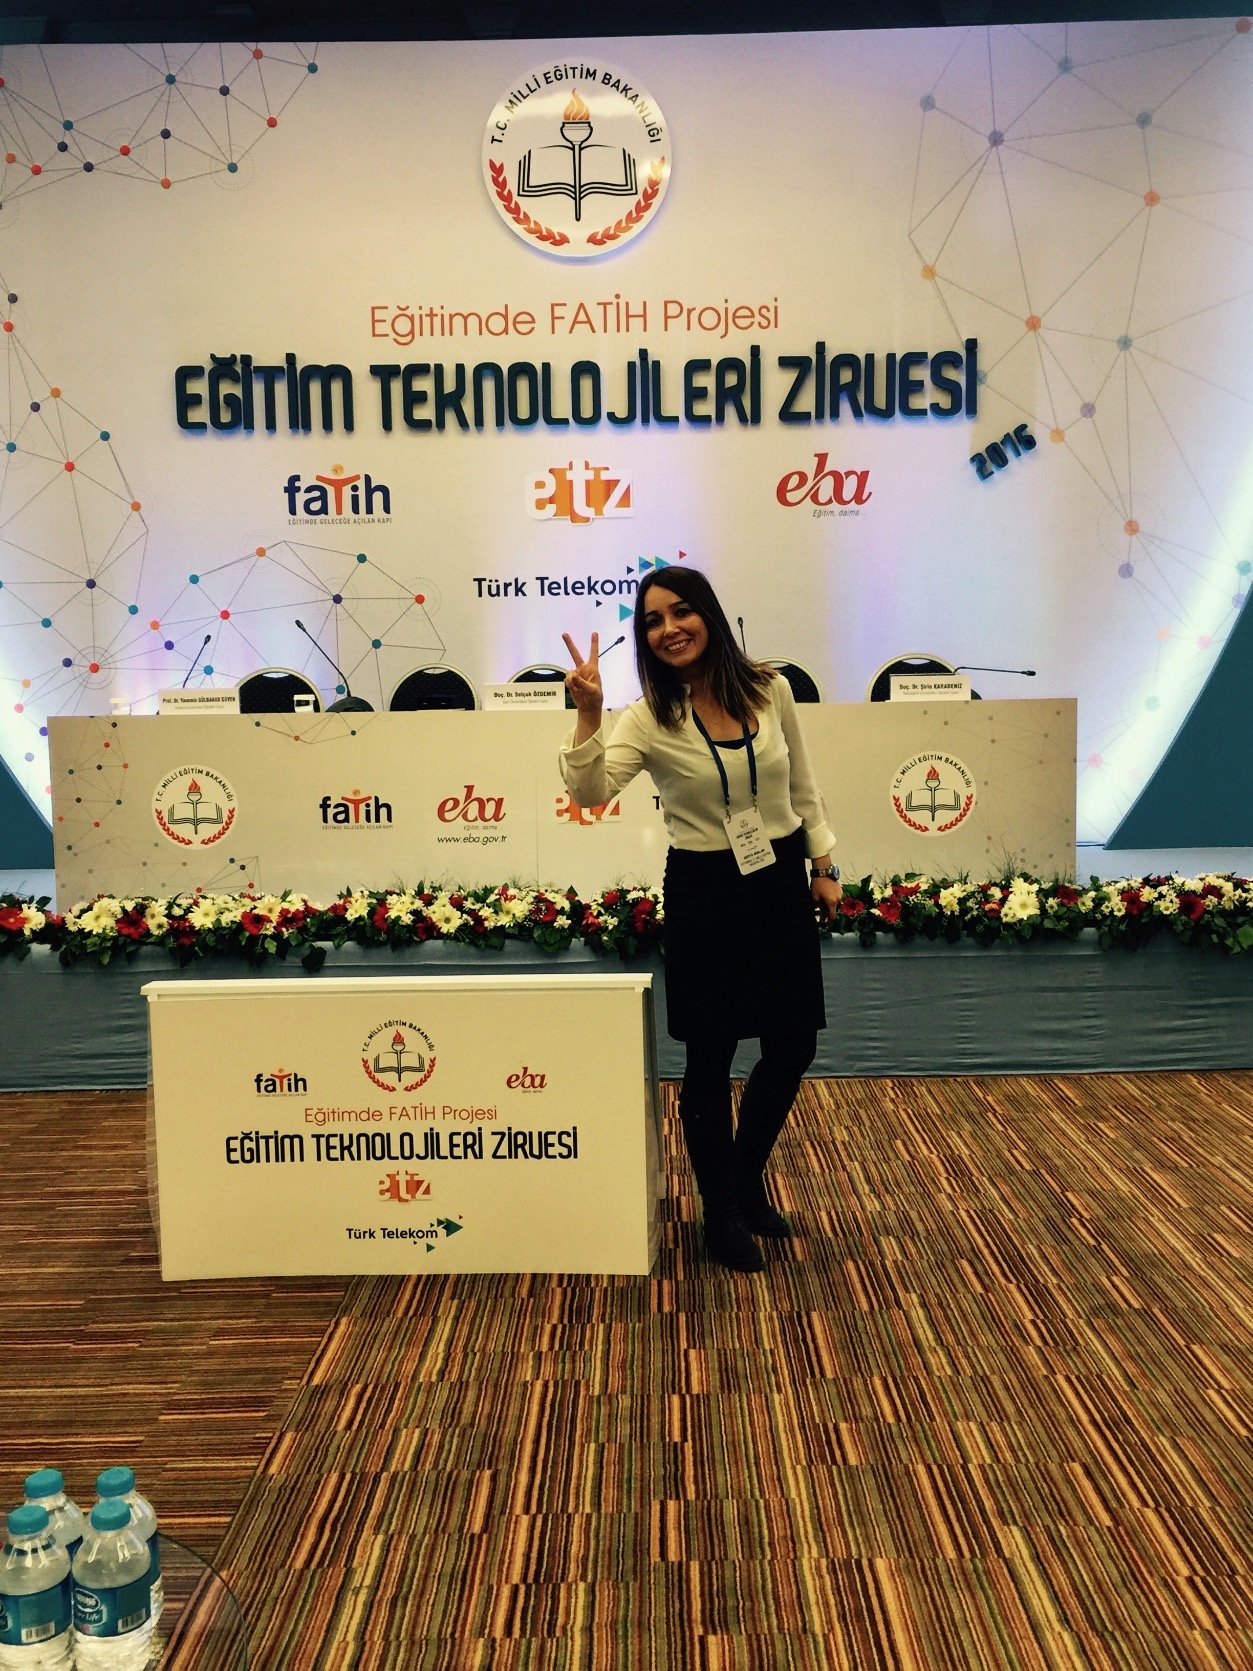 Bilişim Teknolojileri Öğretmeni 
Bahçeşehir Üniversitesi, Eğitim Teknolojisi, PhDc
#makeröğretmen #egt #GoogleCertifiedEducator #AppleTeacher